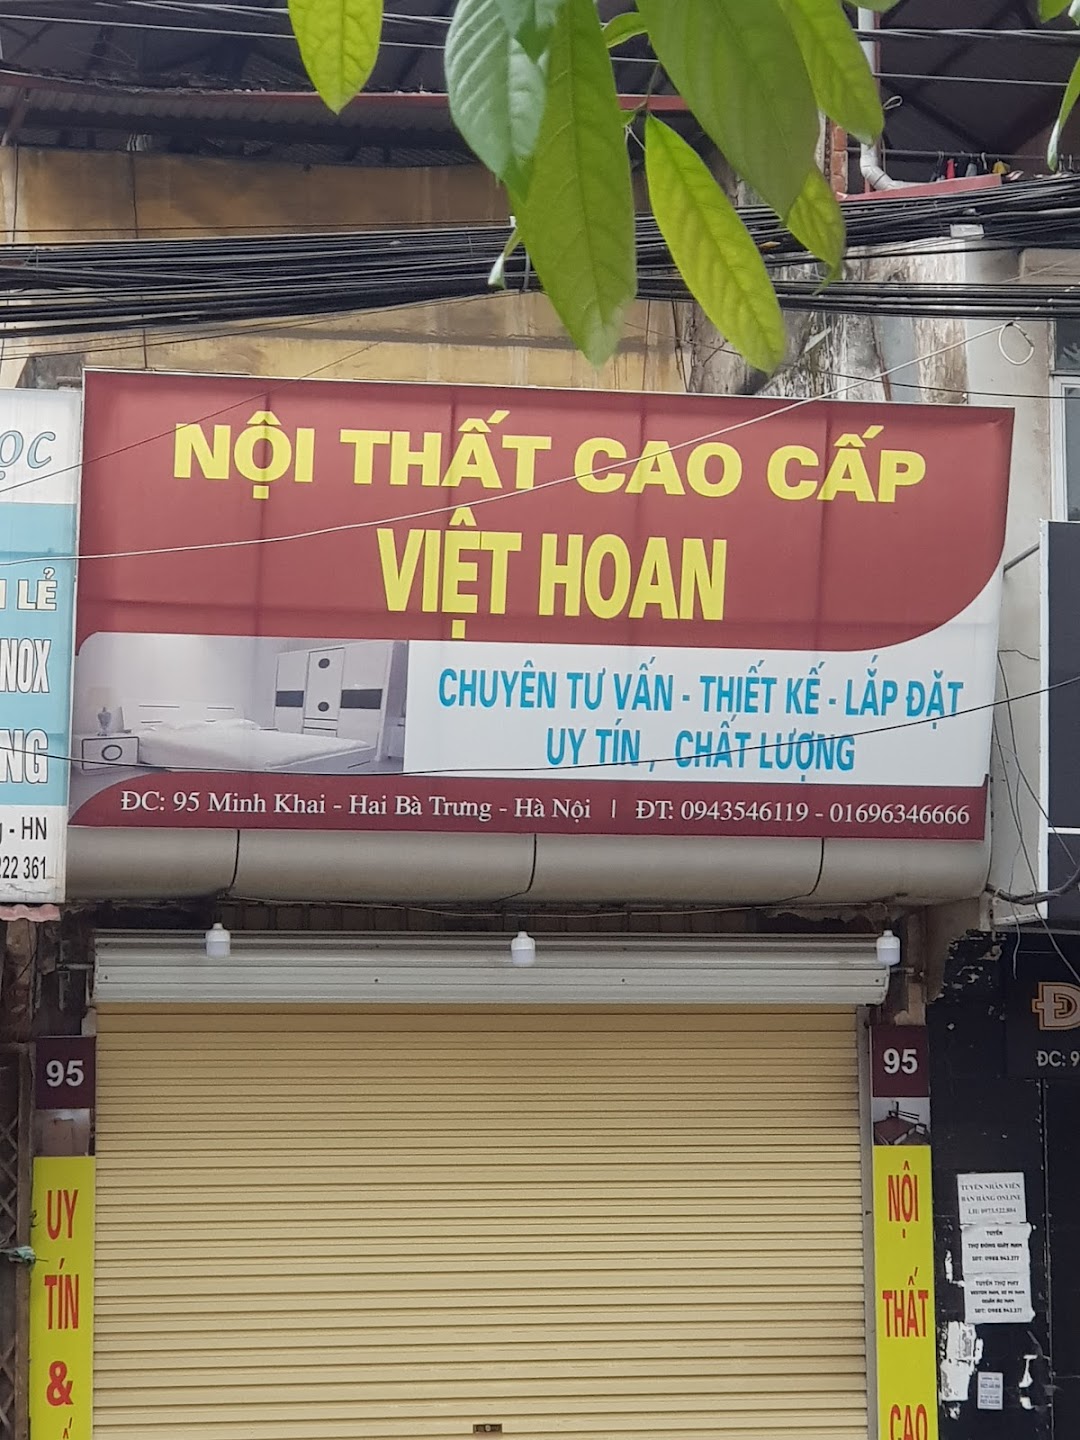 Nội Thất Cao Cấp Việt Hoan